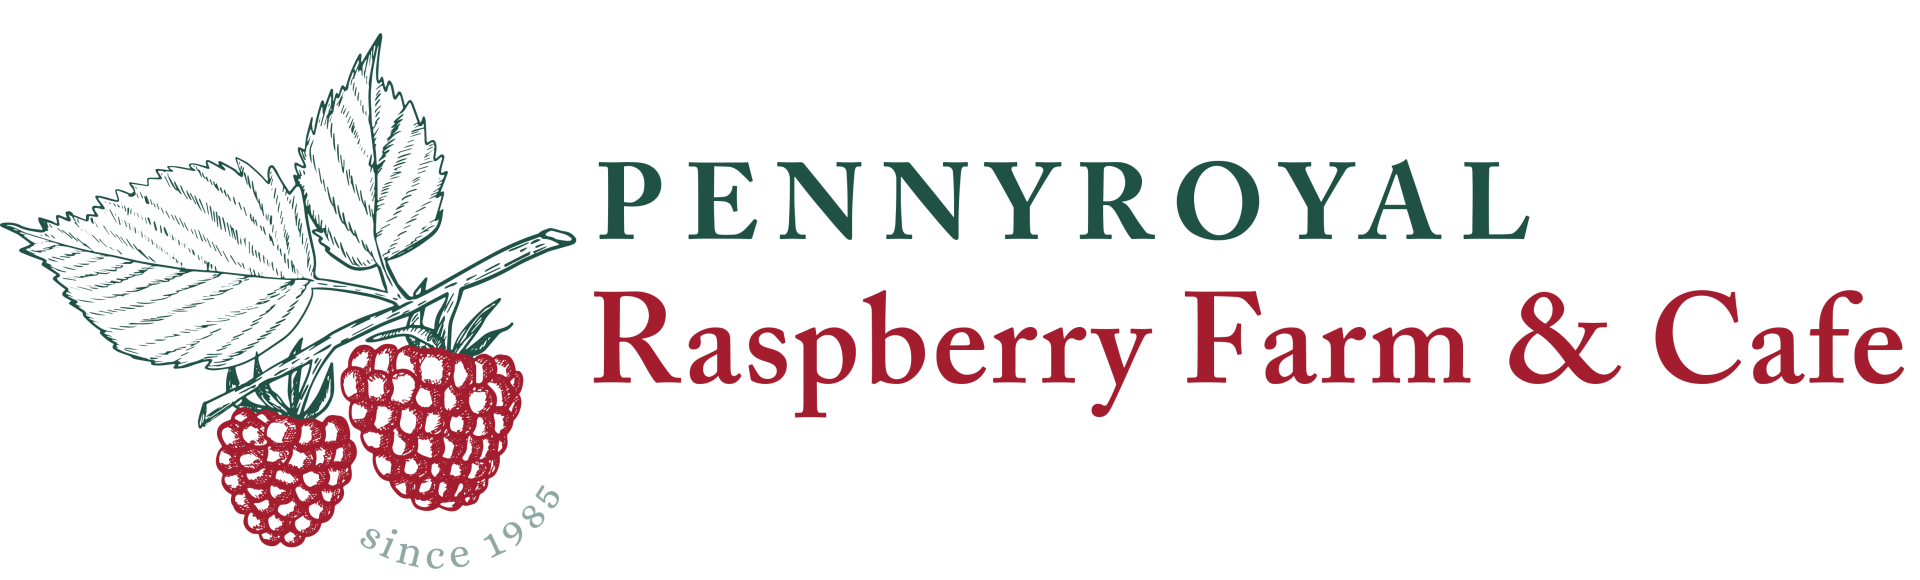 Pennyroyal-Raspberry-Farm-Cidery-LOGO-web